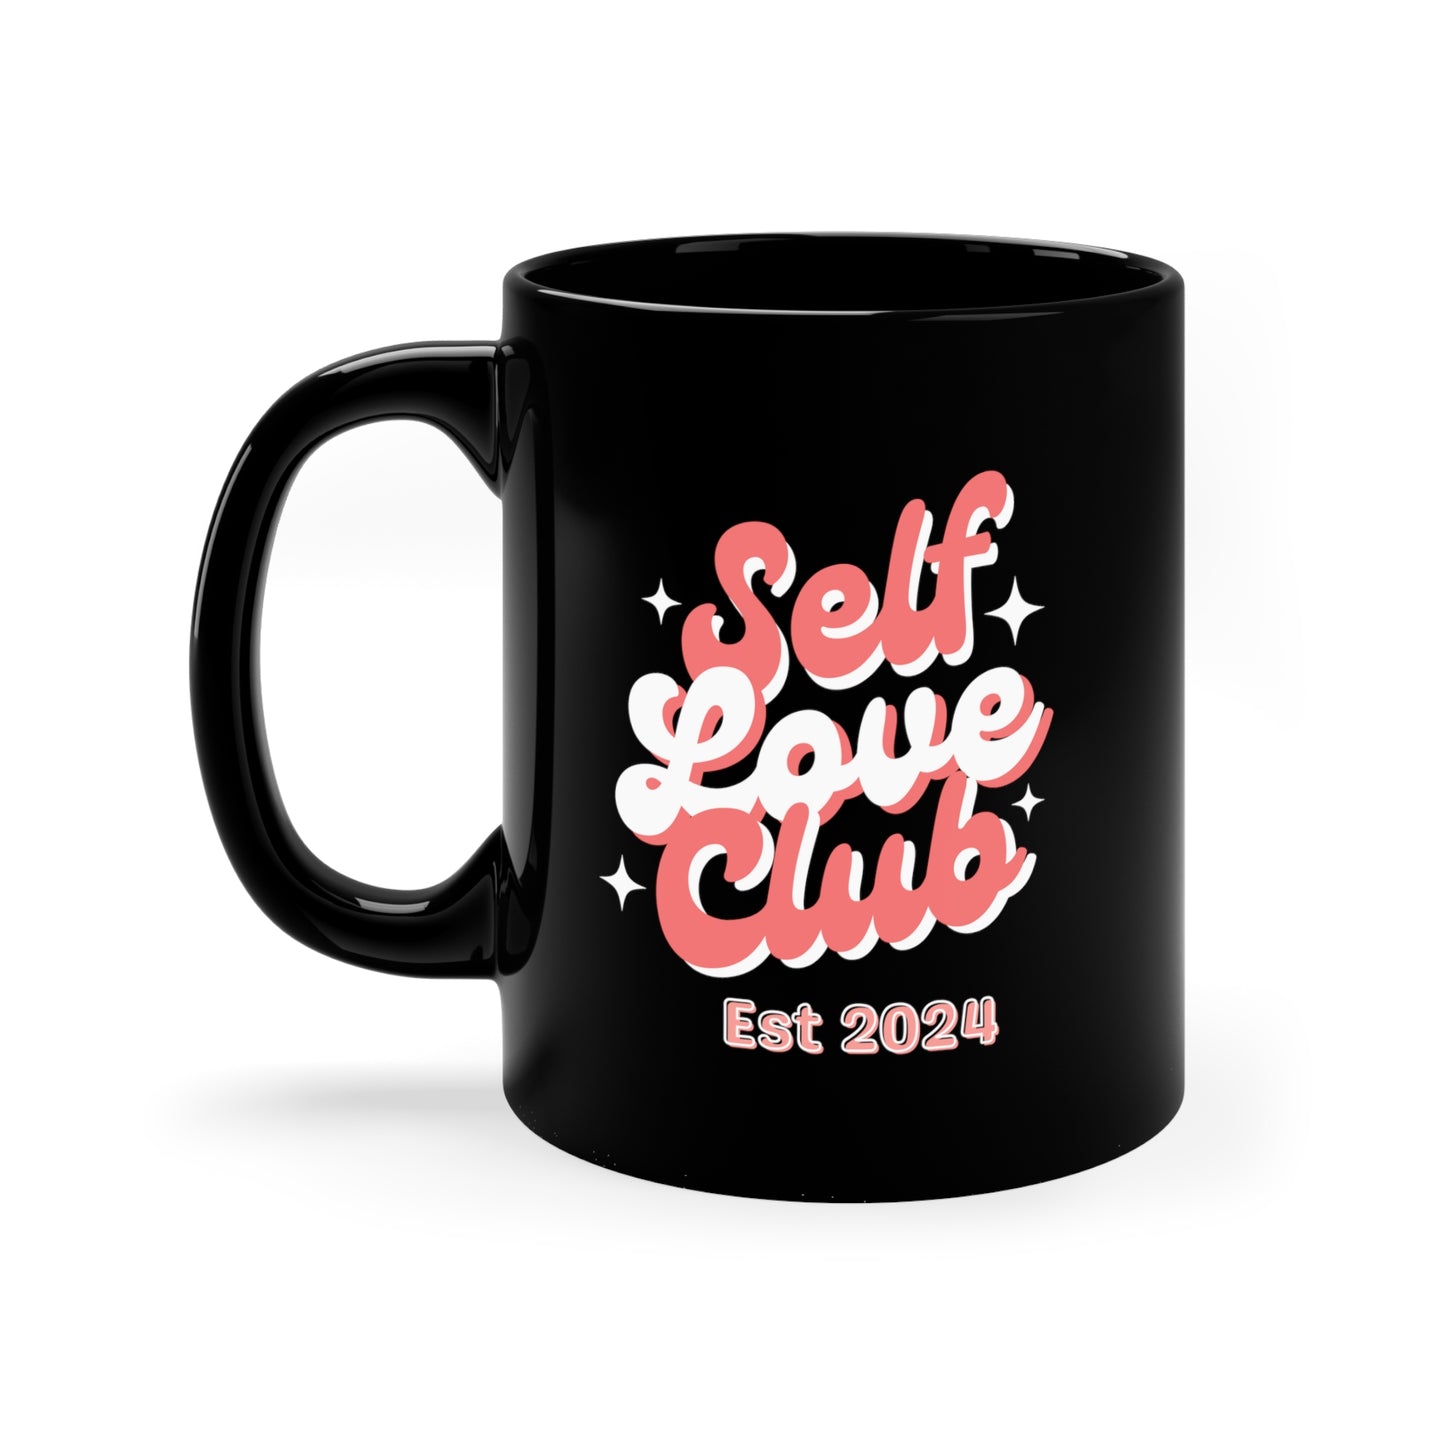 Self Love Club Est 2024 11oz Black Mug